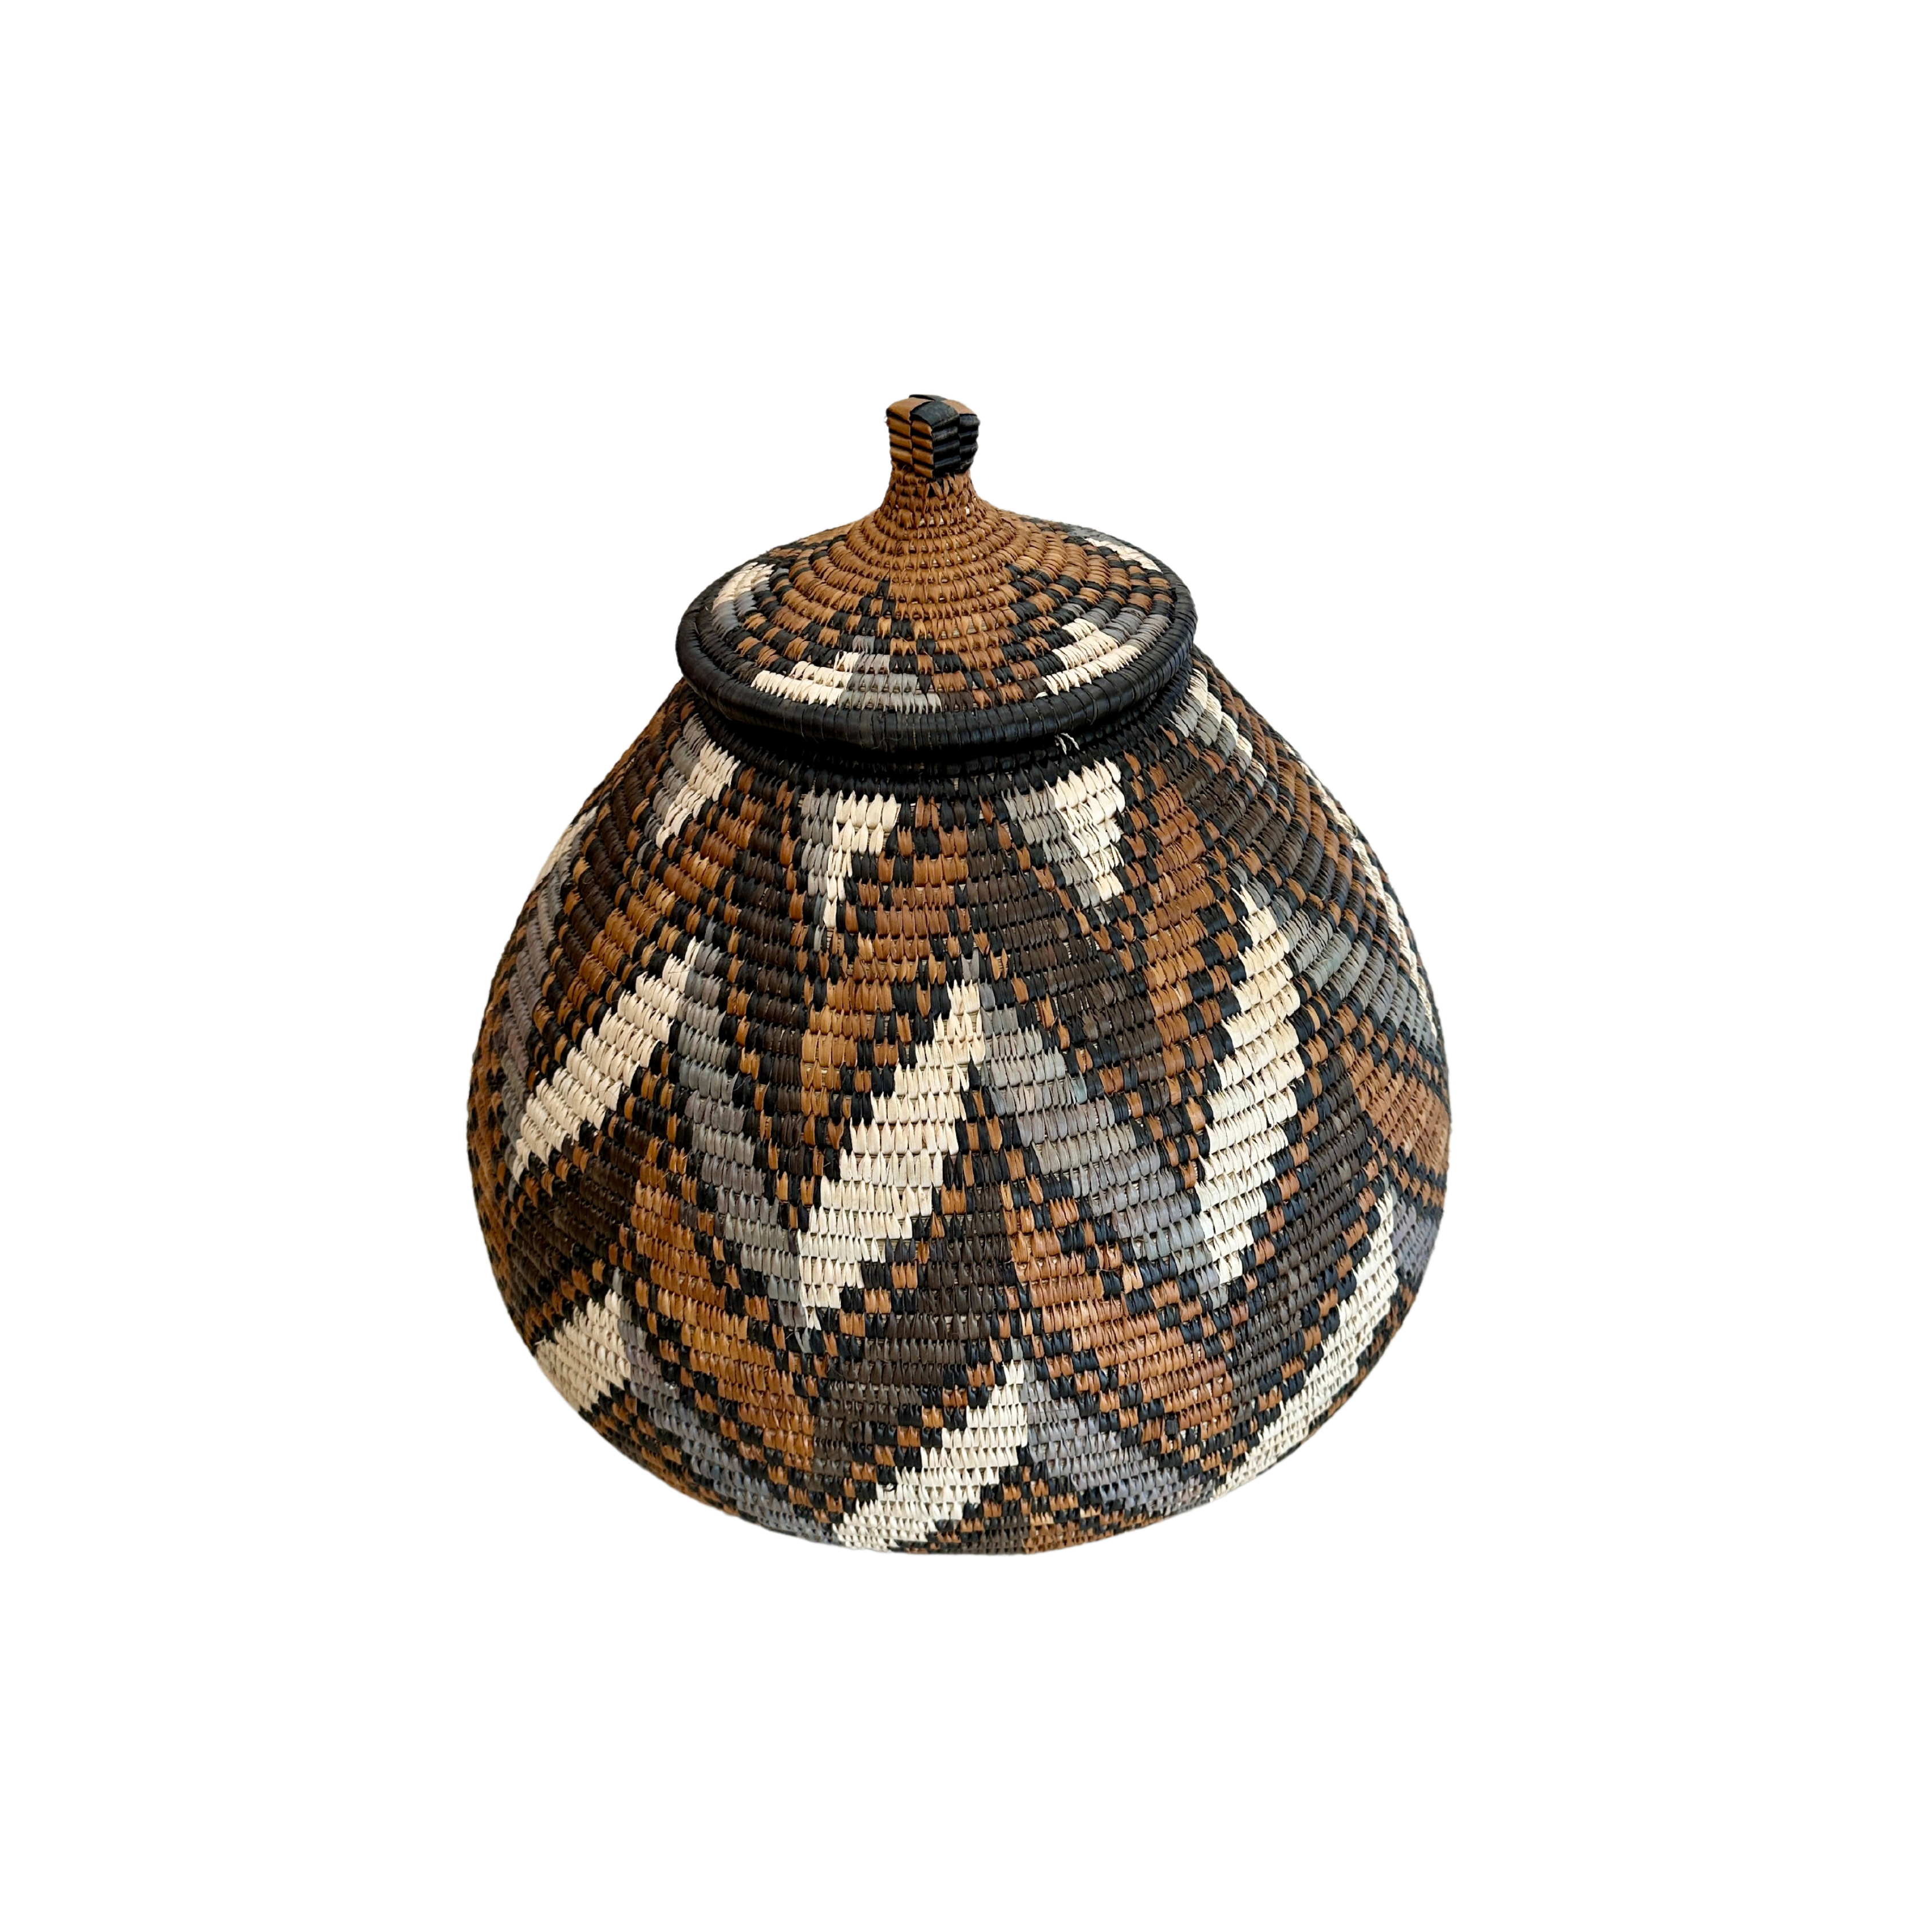 Zulu Hand-Woven Reed Basket - The Bongekile